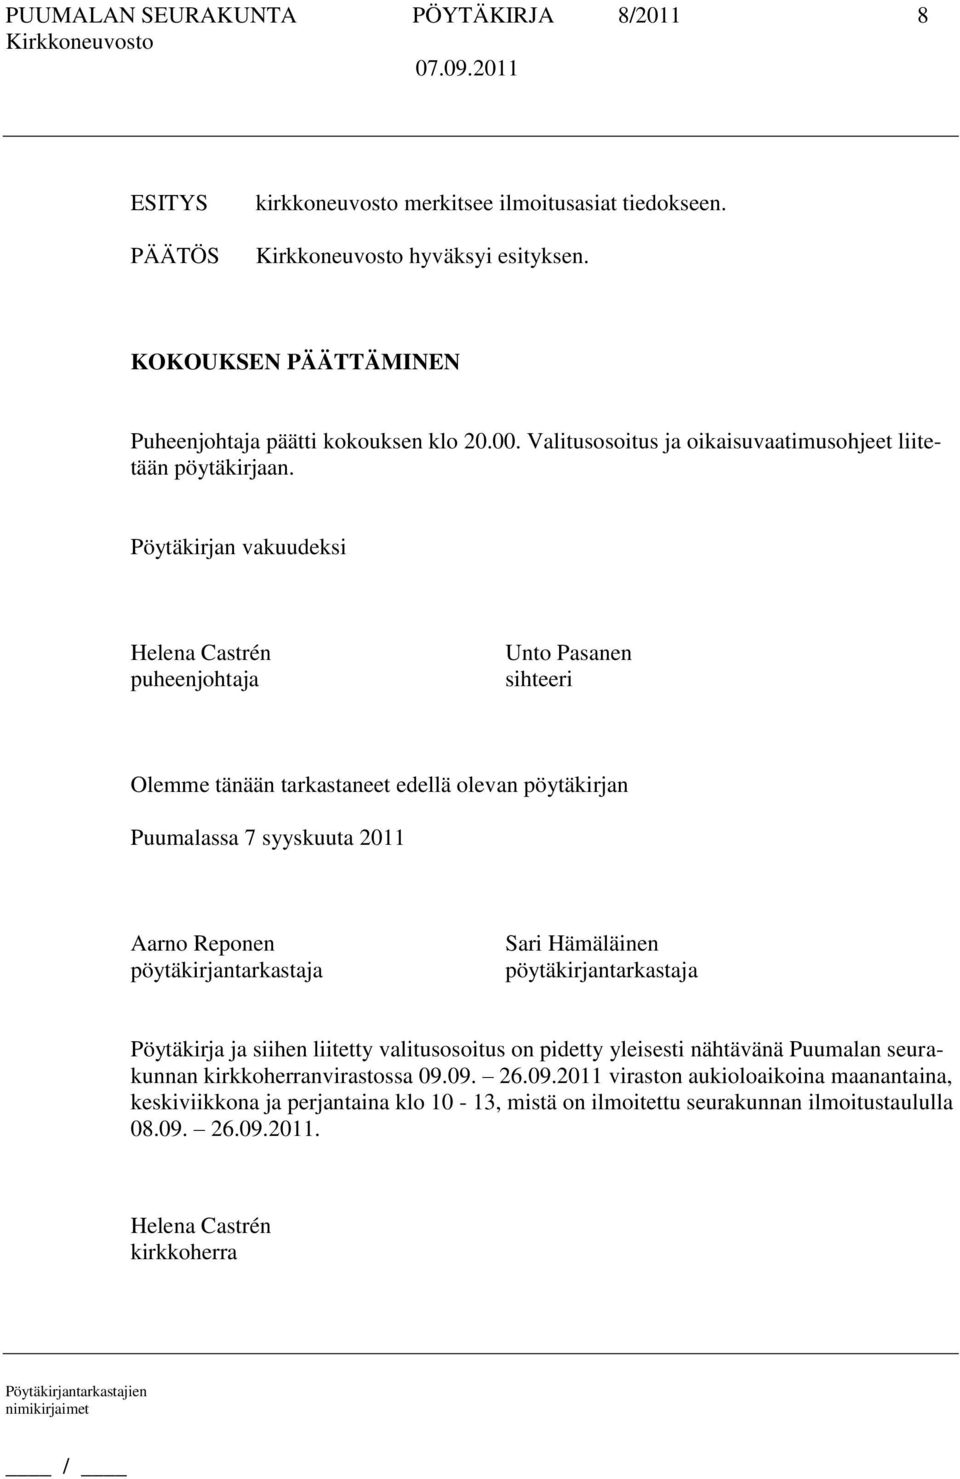 Pöytäkirjan vakuudeksi Helena Castrén puheenjohtaja Unto Pasanen sihteeri Olemme tänään tarkastaneet edellä olevan pöytäkirjan Puumalassa 7 syyskuuta 2011 Aarno Reponen